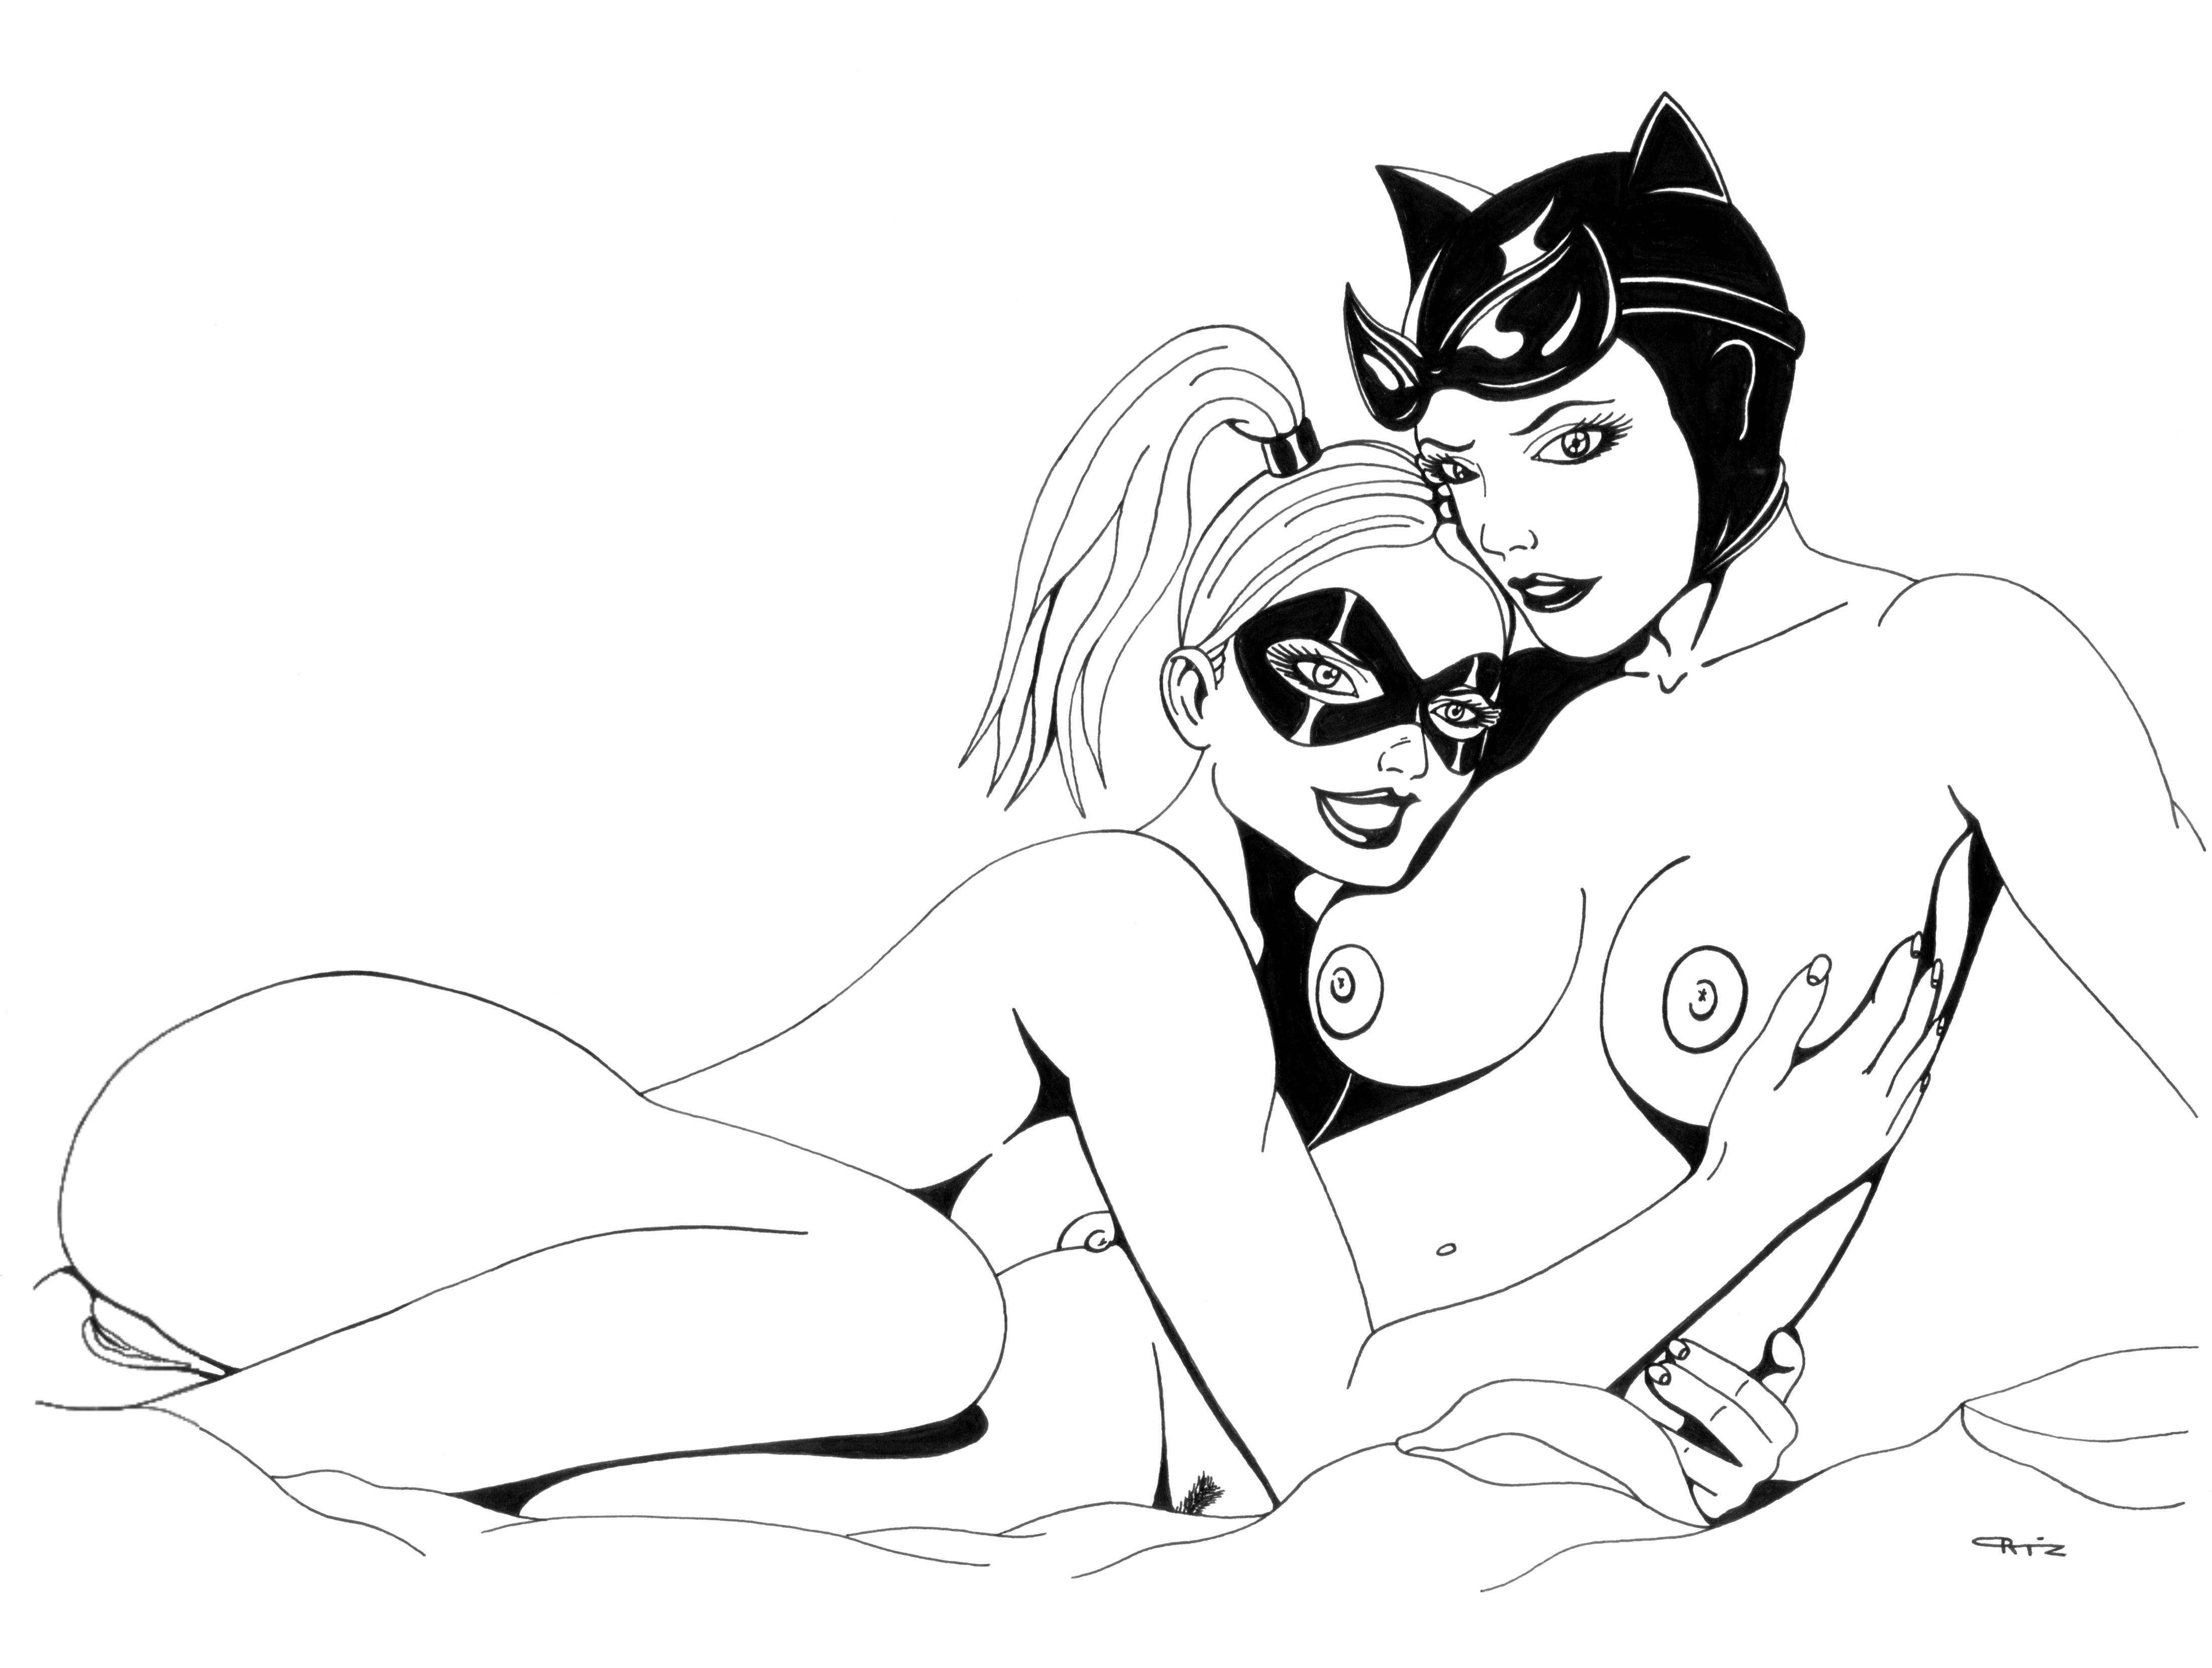 Harley quinn catwoman lesbian